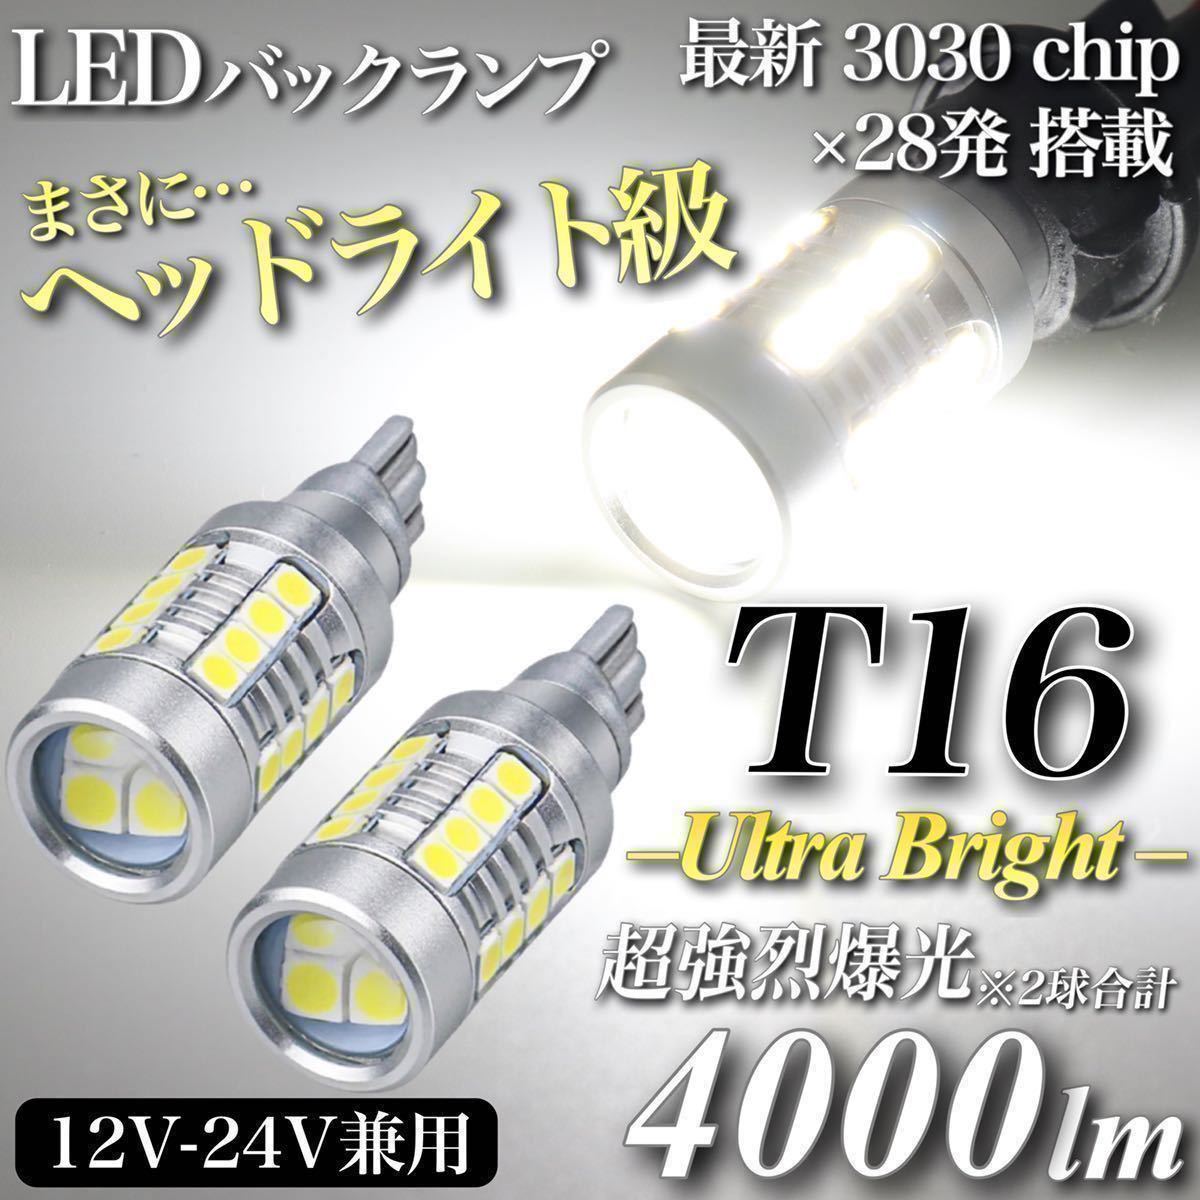 【送料無料】4000lm ヘッドライト級 超爆光 驚異 T16 LED バックランプ キャンセラー内蔵 6500K 純白 New 3030 チップ 28発 無極性 2個入 の画像1